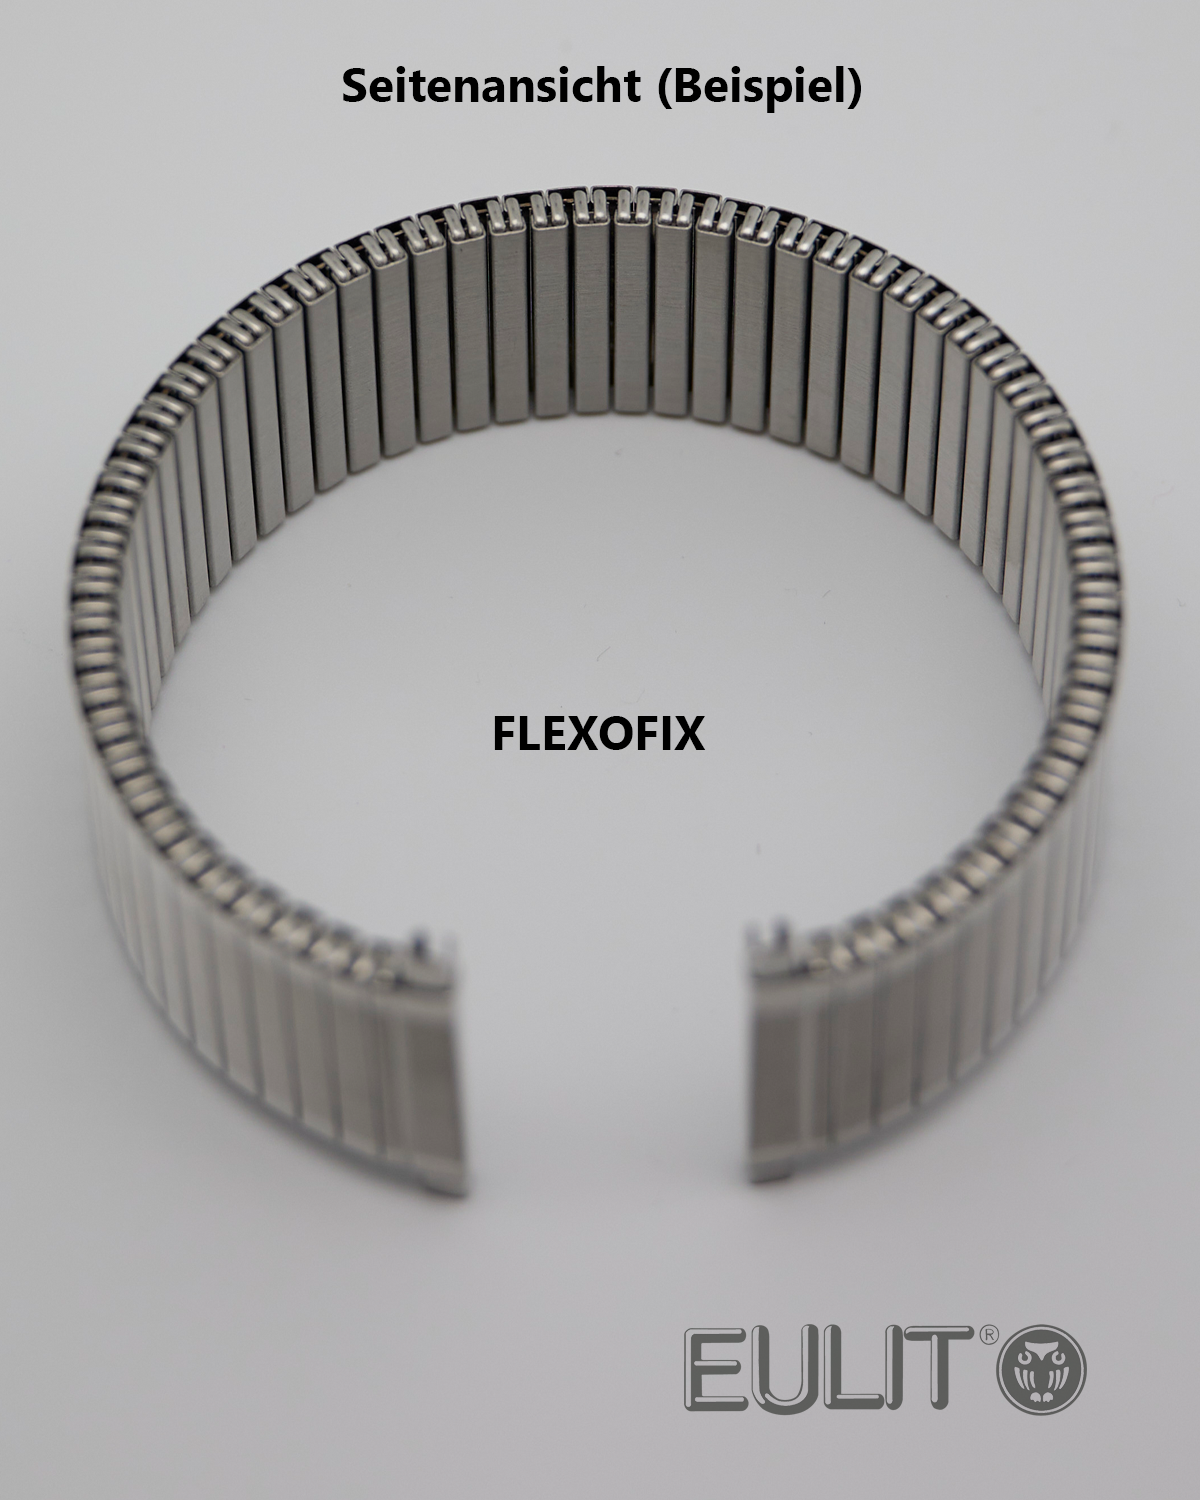 76-420006 EULIT FLEXOFIX 14-16 mm Edelstahl